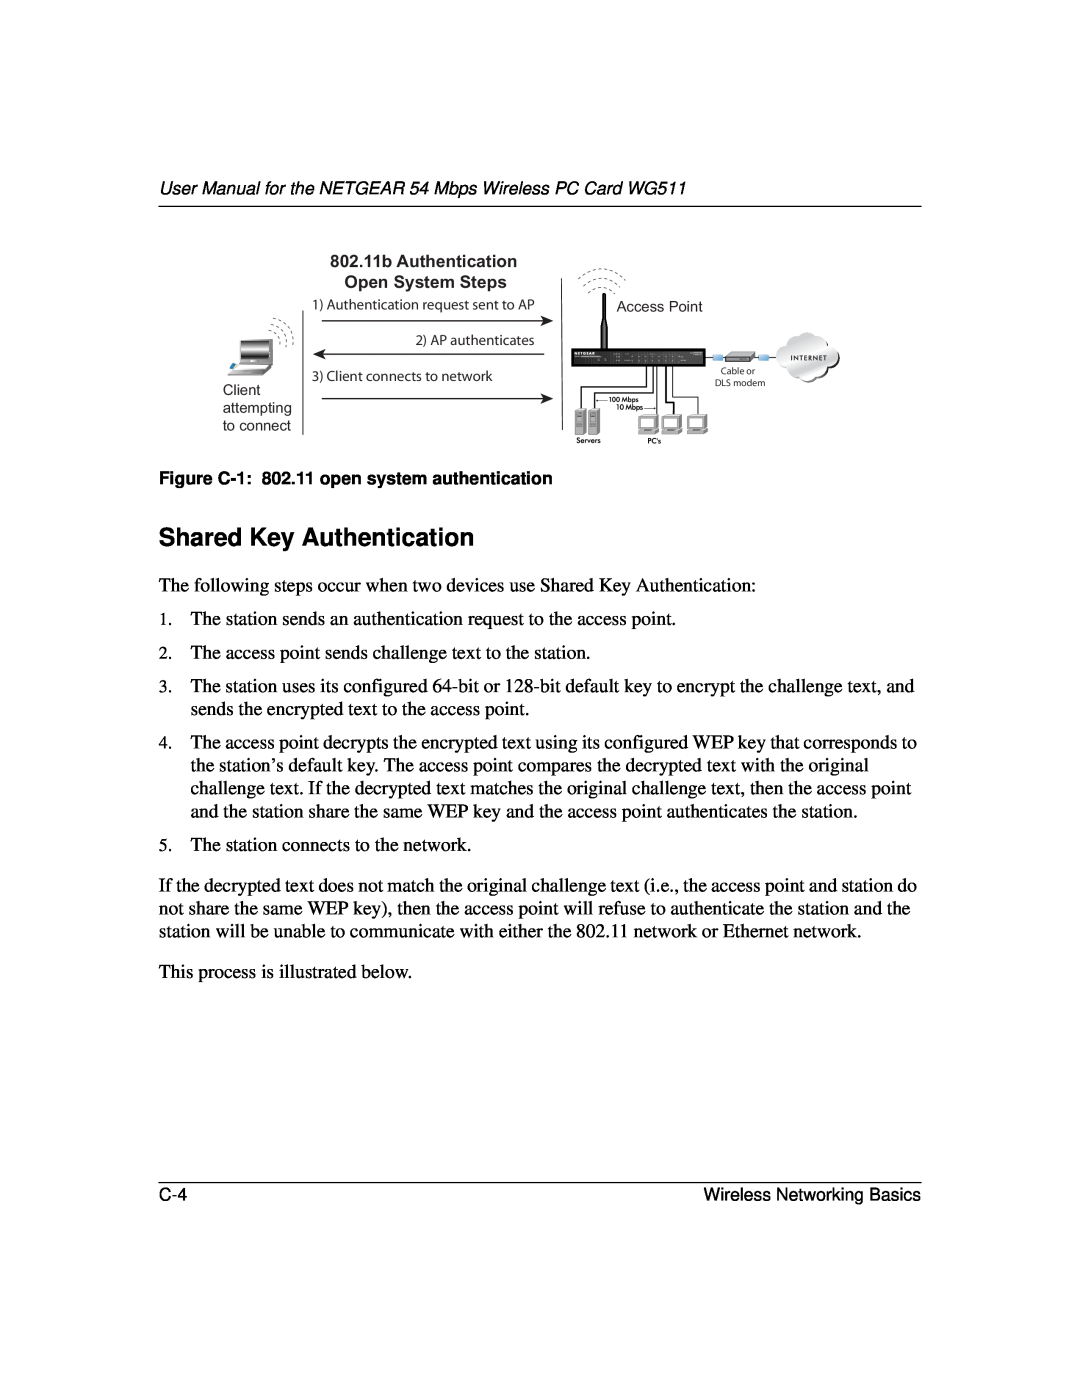 NETGEAR WGE111 user manual 802.11b Authentication Open System Steps, Authentication request sent to AP 2 AP authenticates 